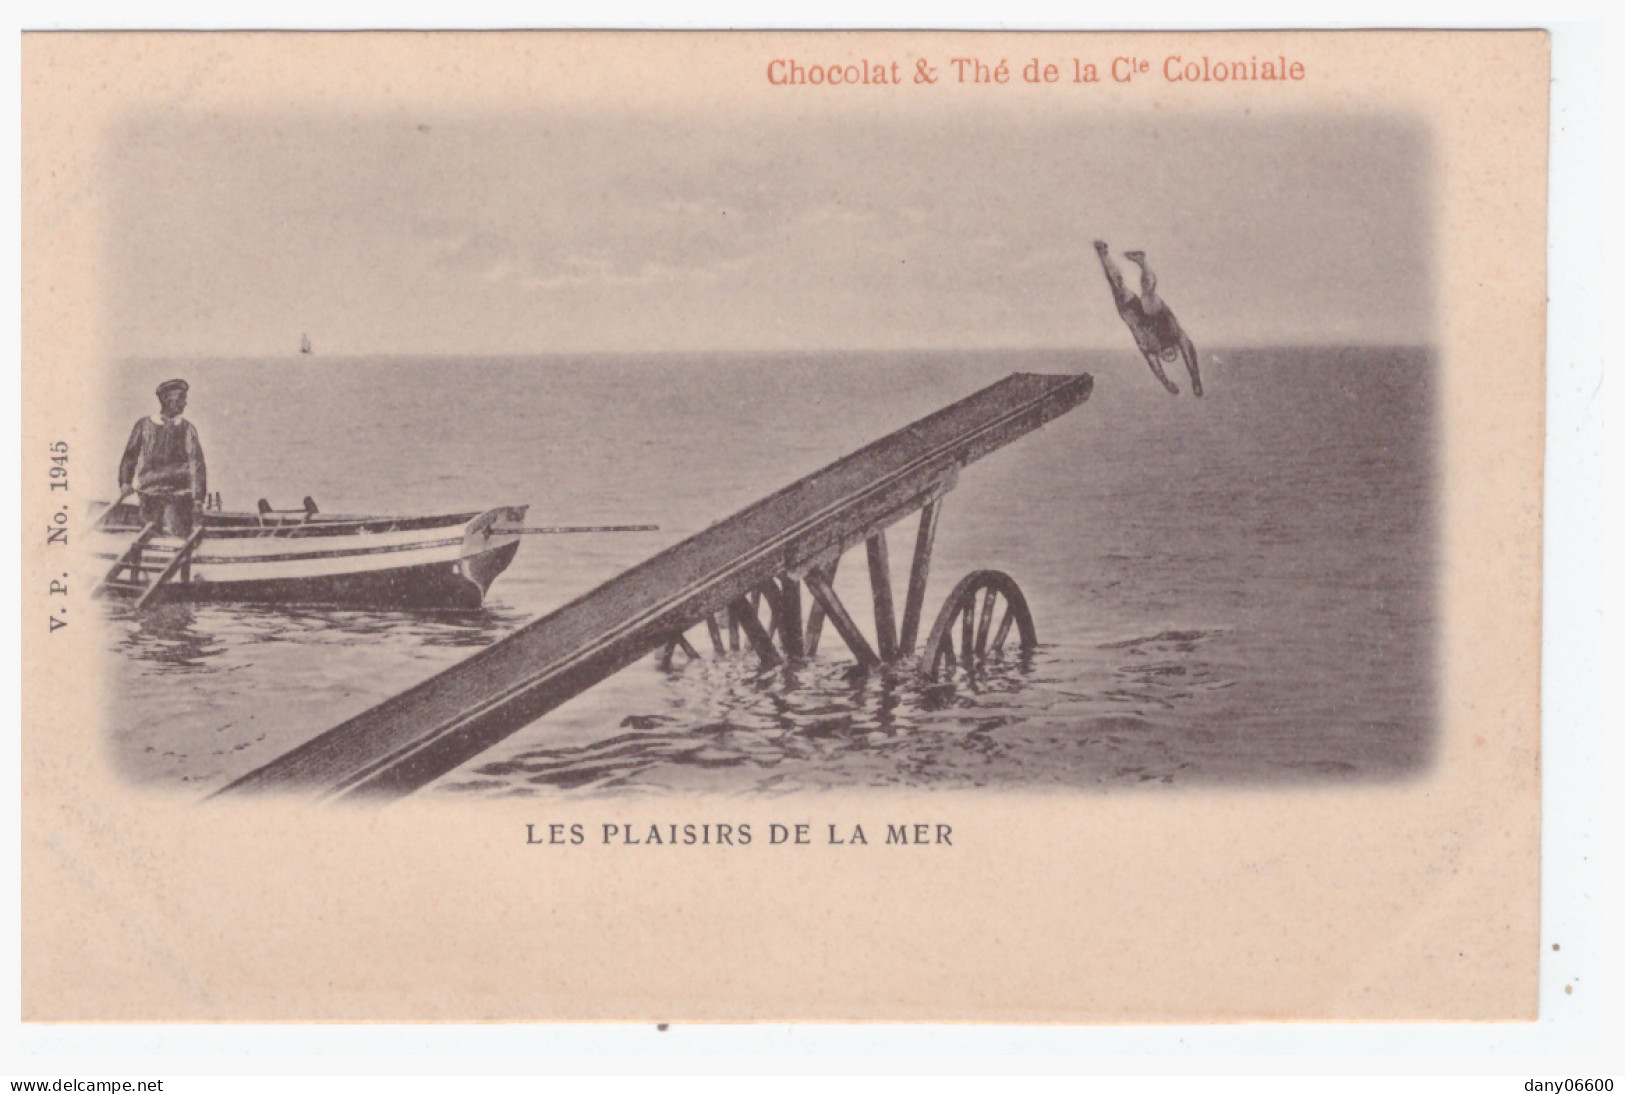  Les Plaisirs De La Mer - CHOCOLAT & THE DE LA Cie COLONIALE  (carte Animée) - Natation